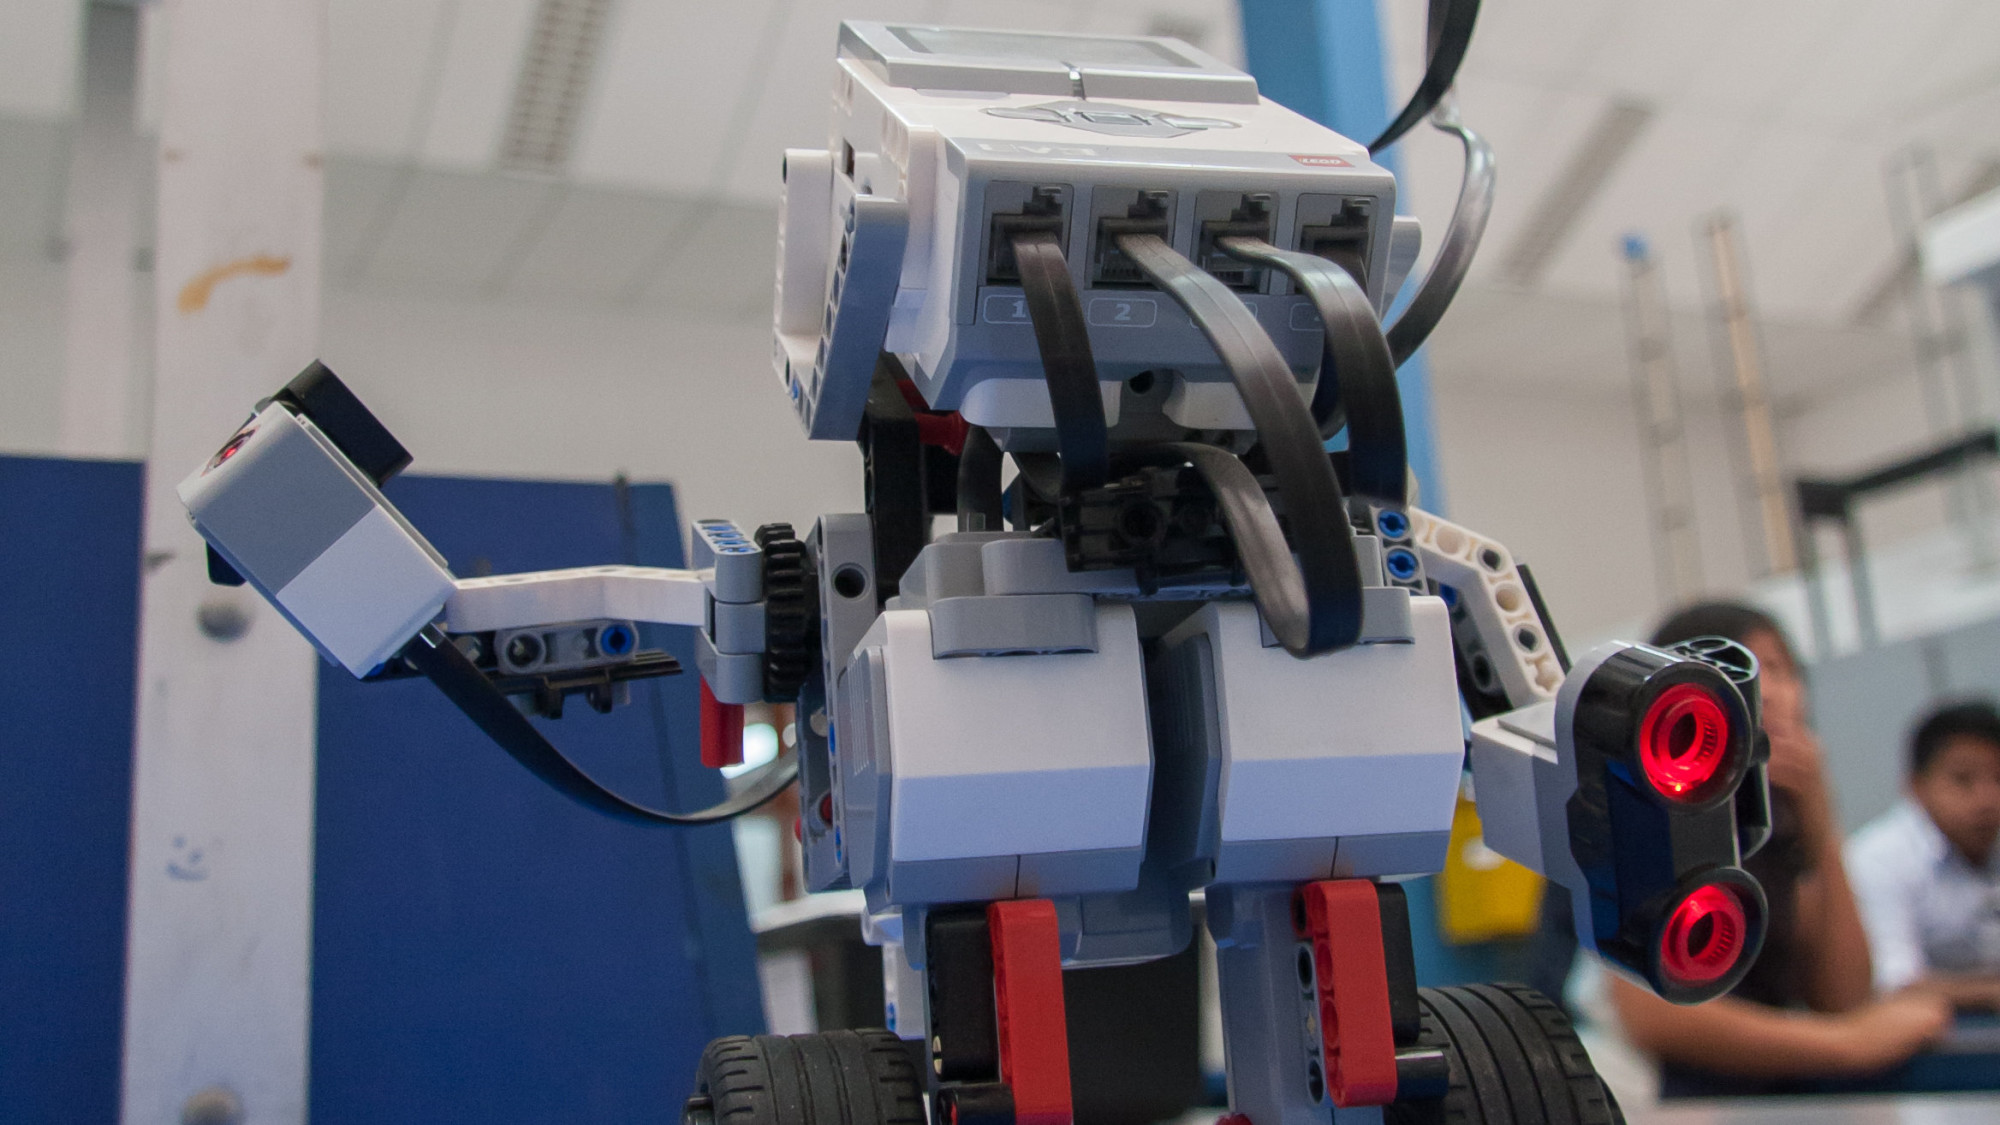 La UDEP impulsa proyectos de robótica y biomecánica, para potenciar soluciones que mejoren la salud.